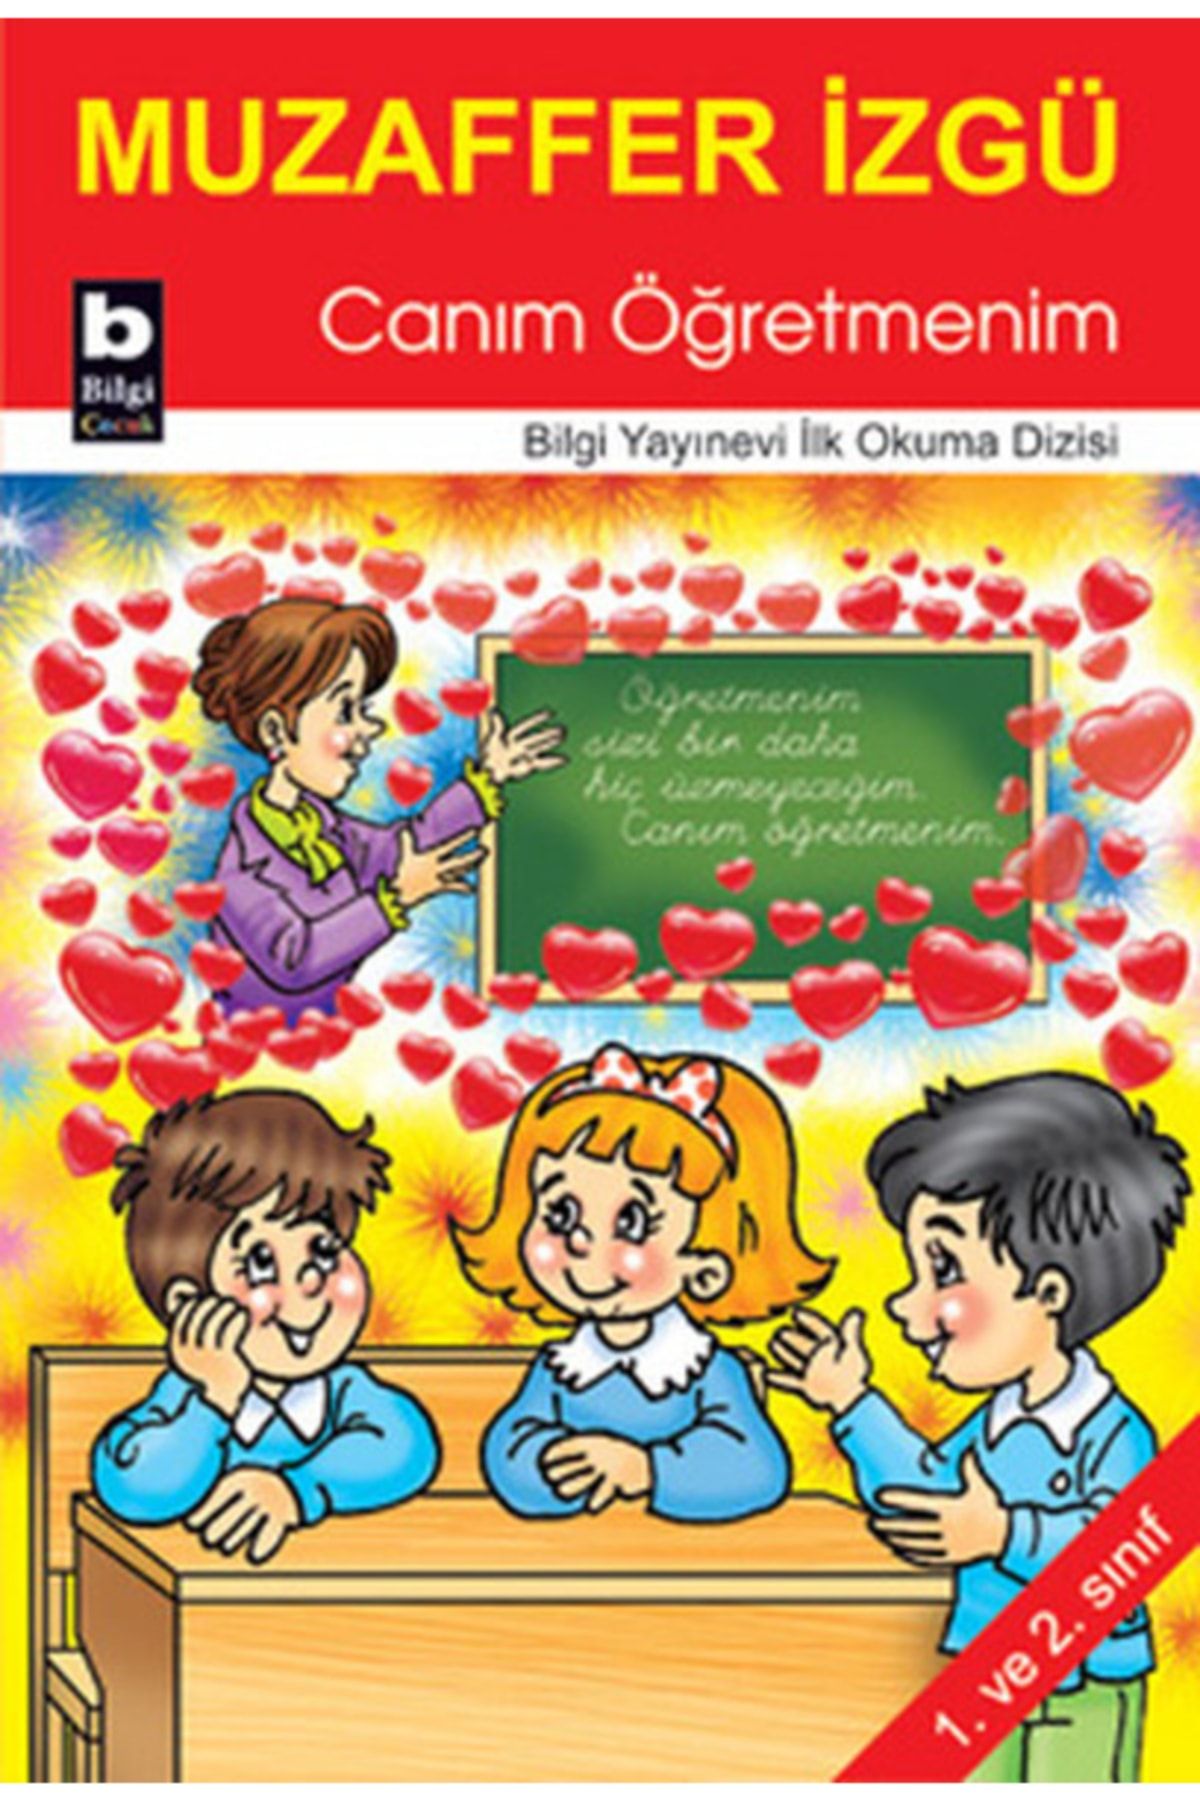 Bilgi Yayınları Canım Öğretmenim / Ilk Okuma Dizisi